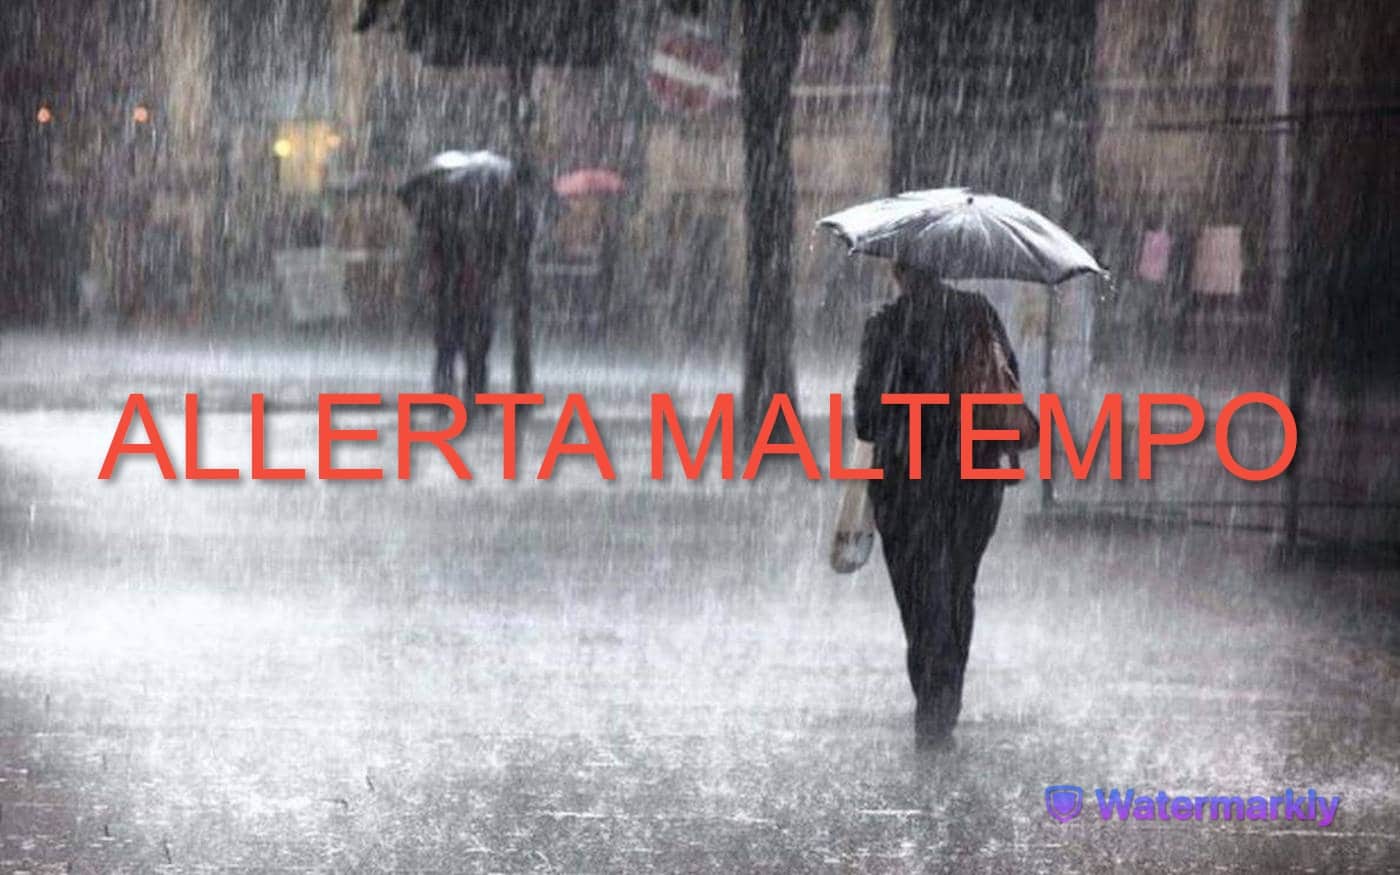 Maltempo: allerta rossa in Emilia-Romagna. Venti forti e piogge da Nord a Sud